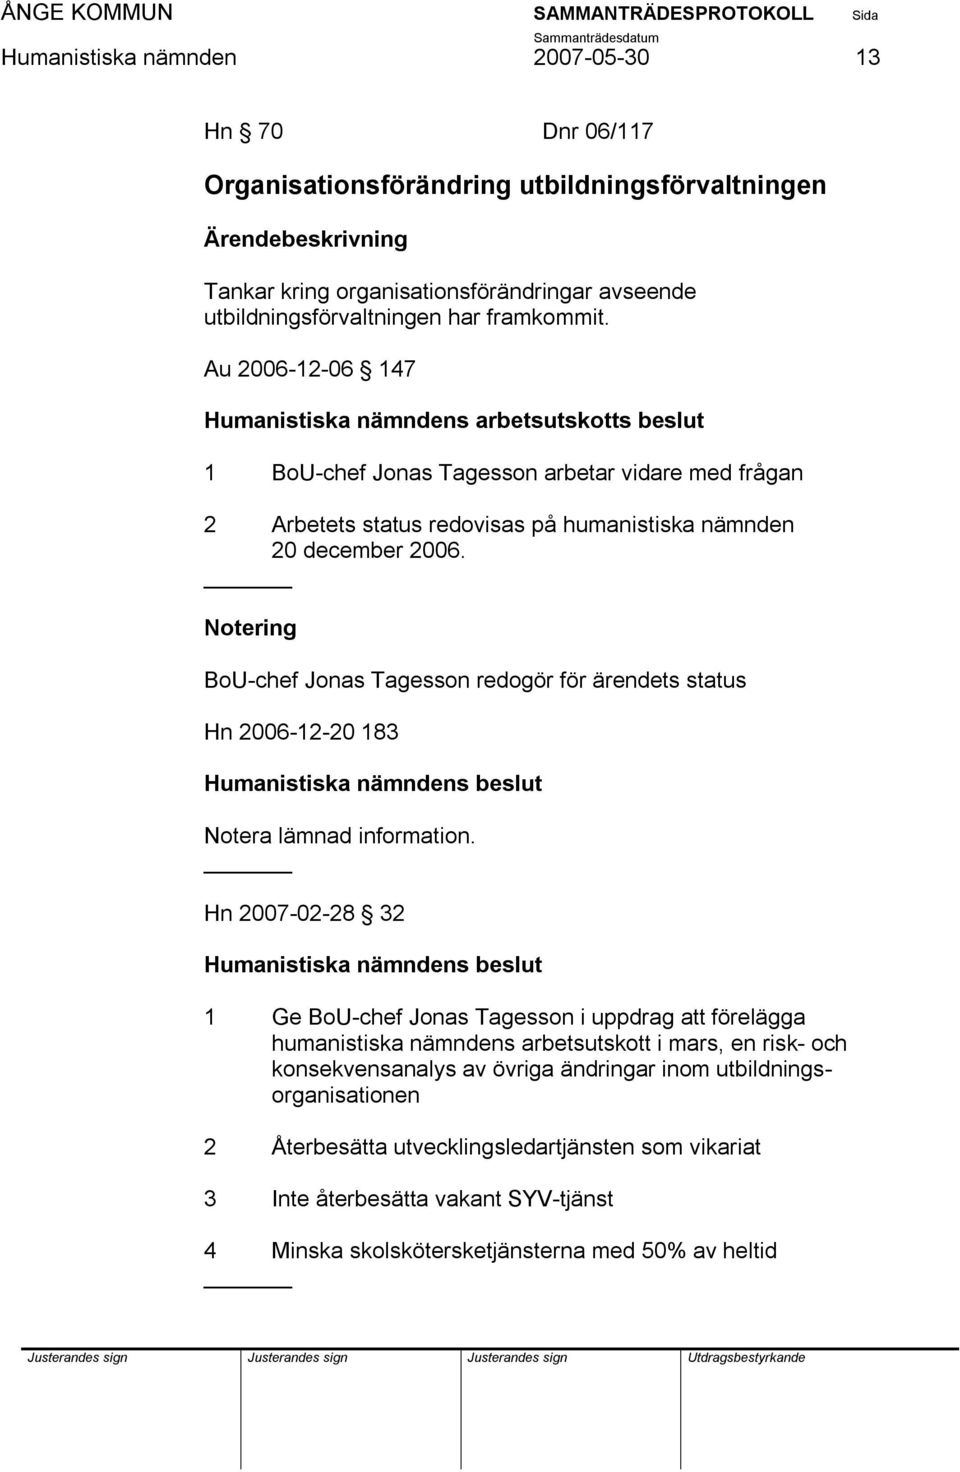 BoU-chef Jonas Tagesson redogör för ärendets status Hn 2006-12-20 183 Notera lämnad information.